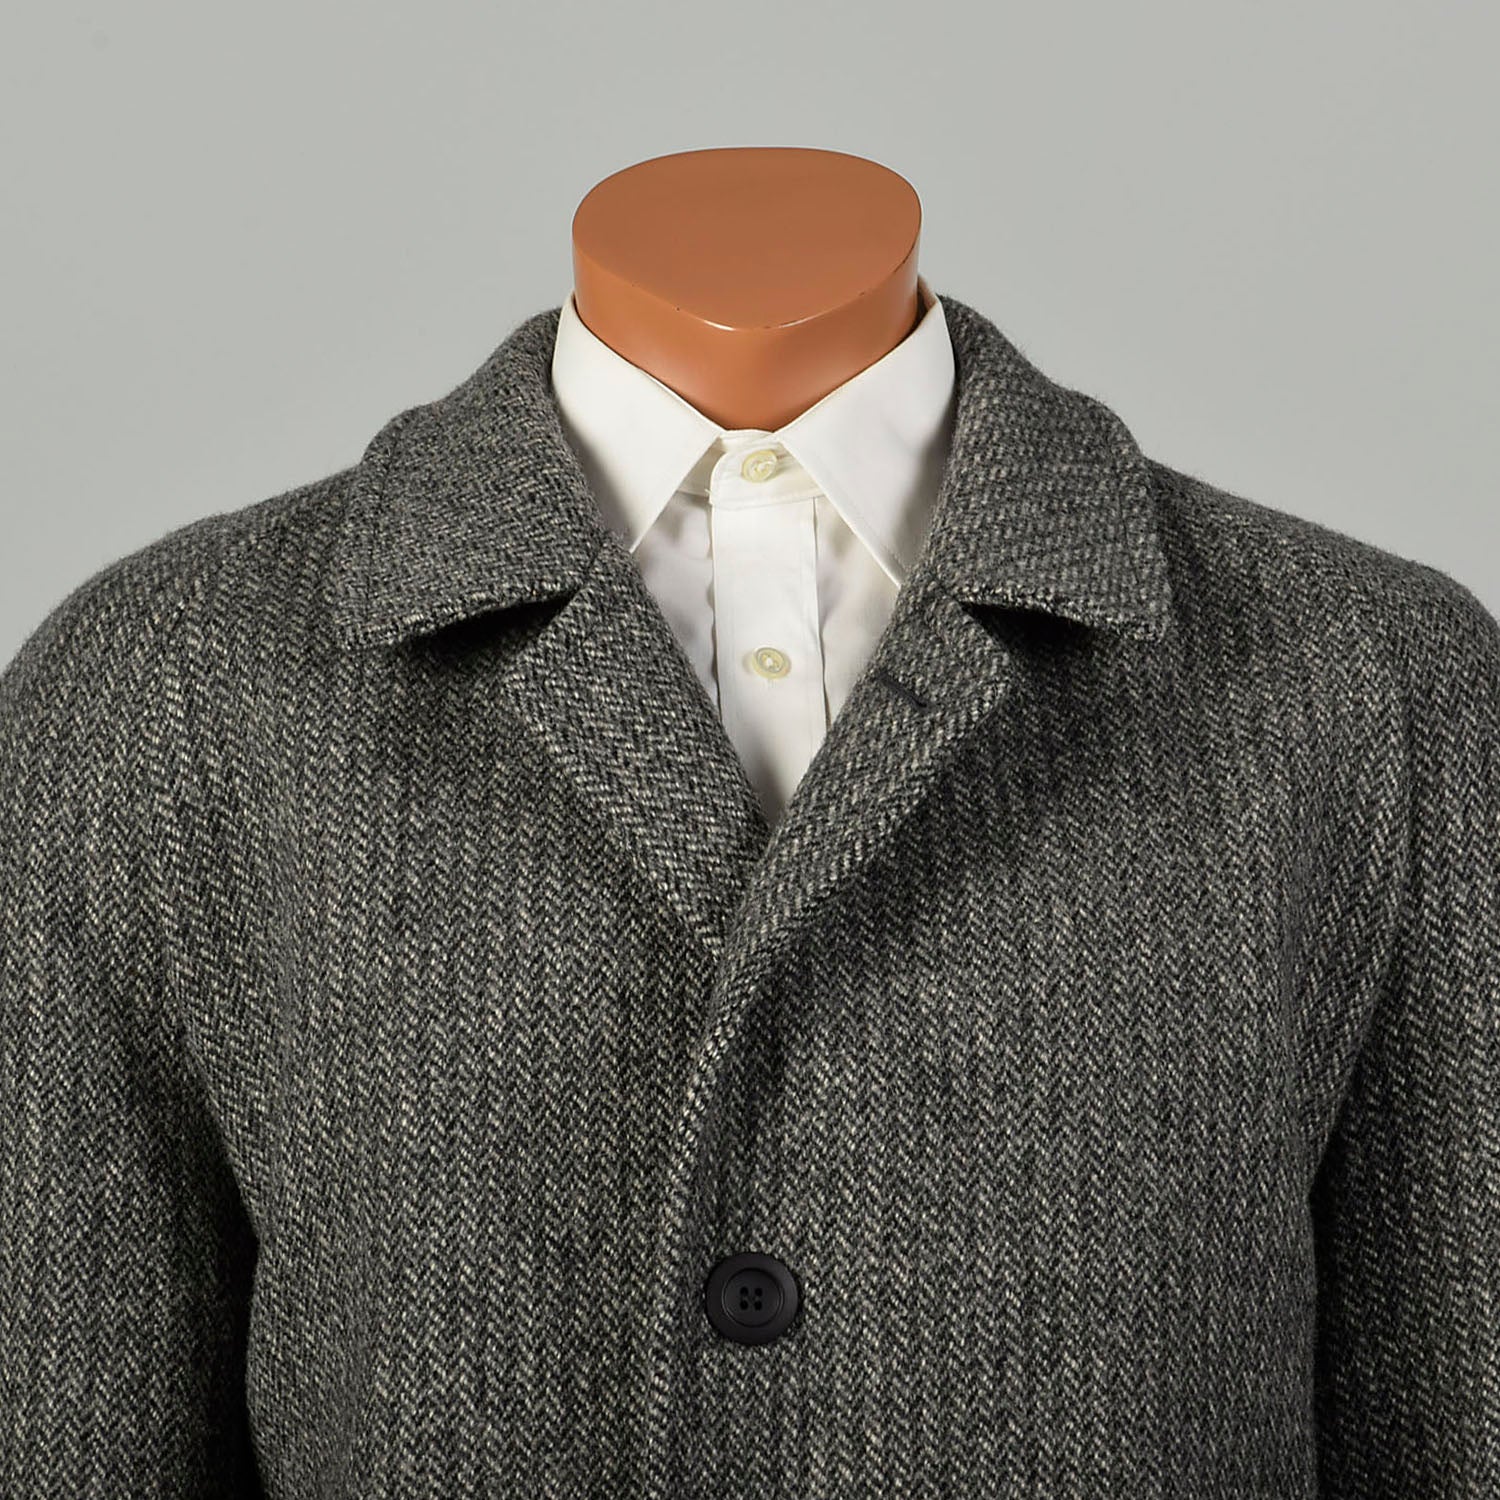 Large 1980s Car Coat Grey Wool Herringbone Tweed Winter Outerwear